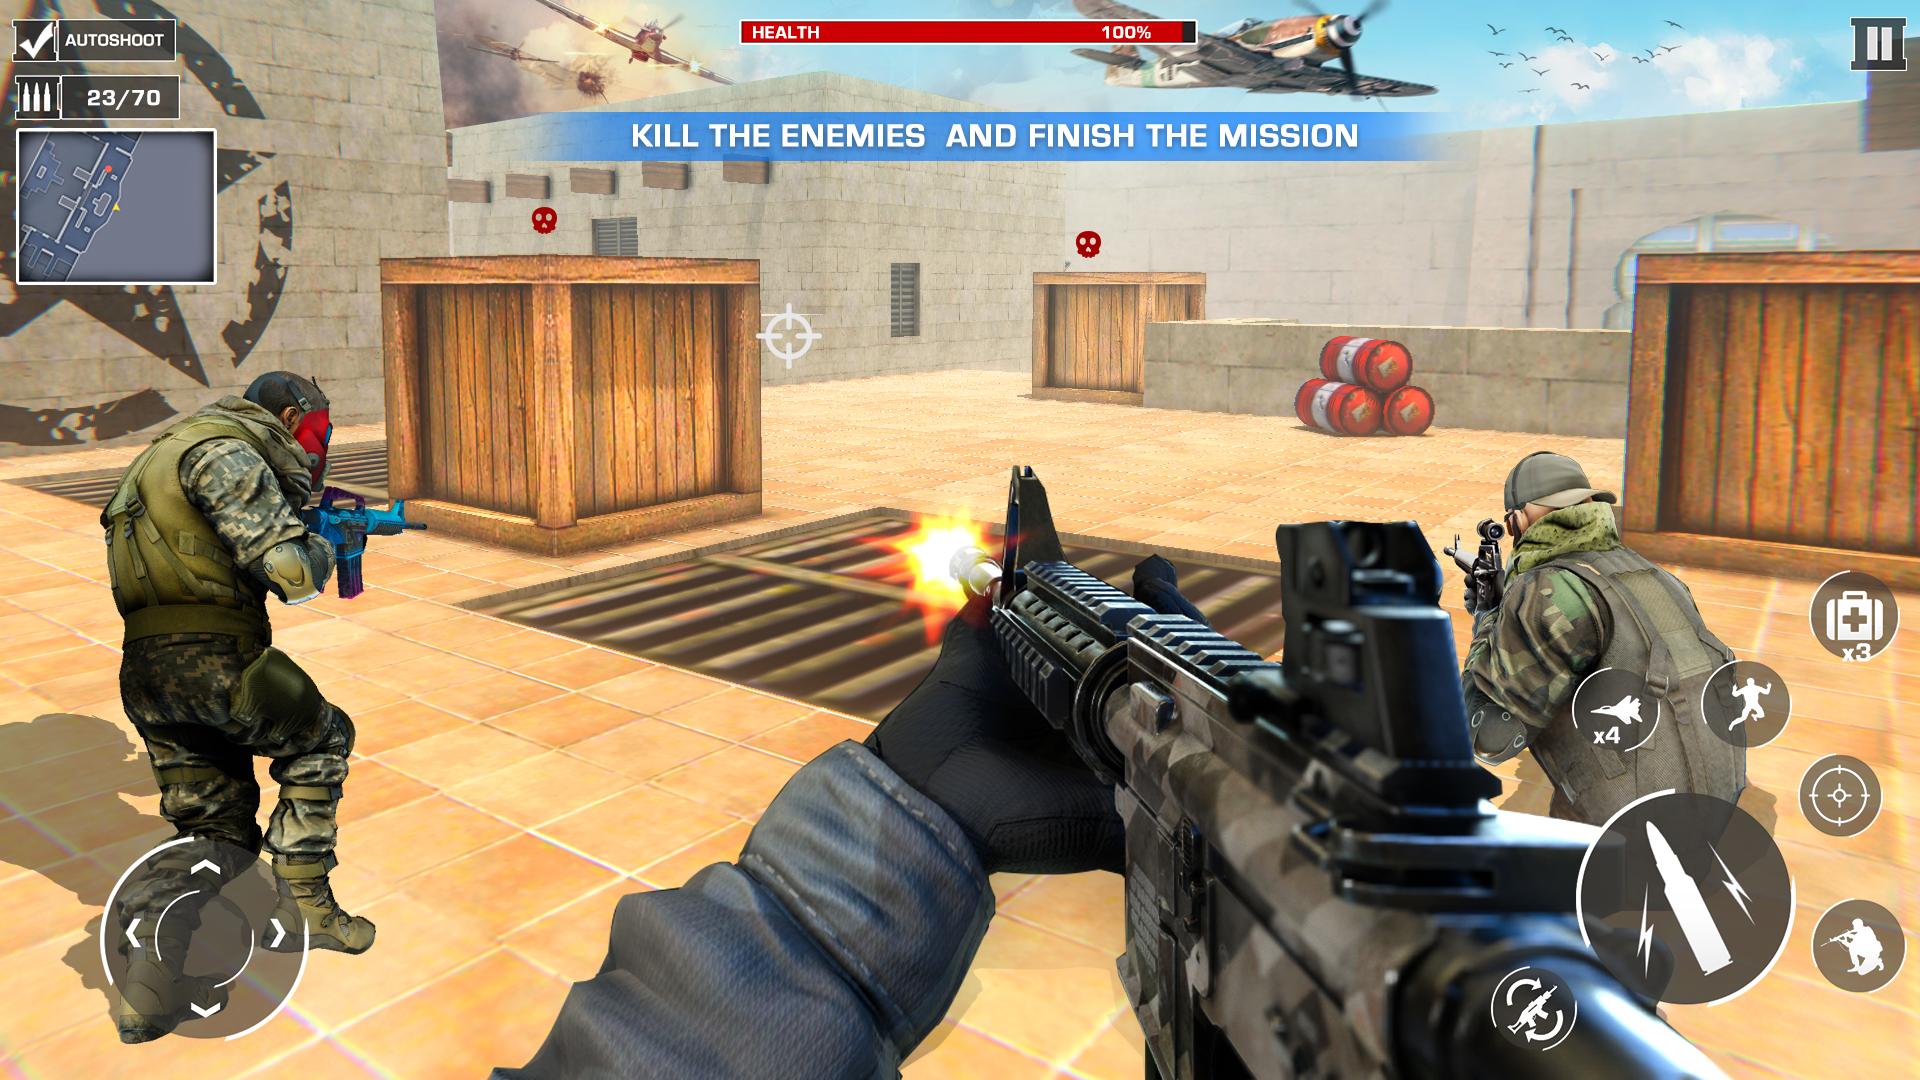 Jogos de luta City Fight Mission 3D free Ação novo jogo de  guerra::Appstore for Android